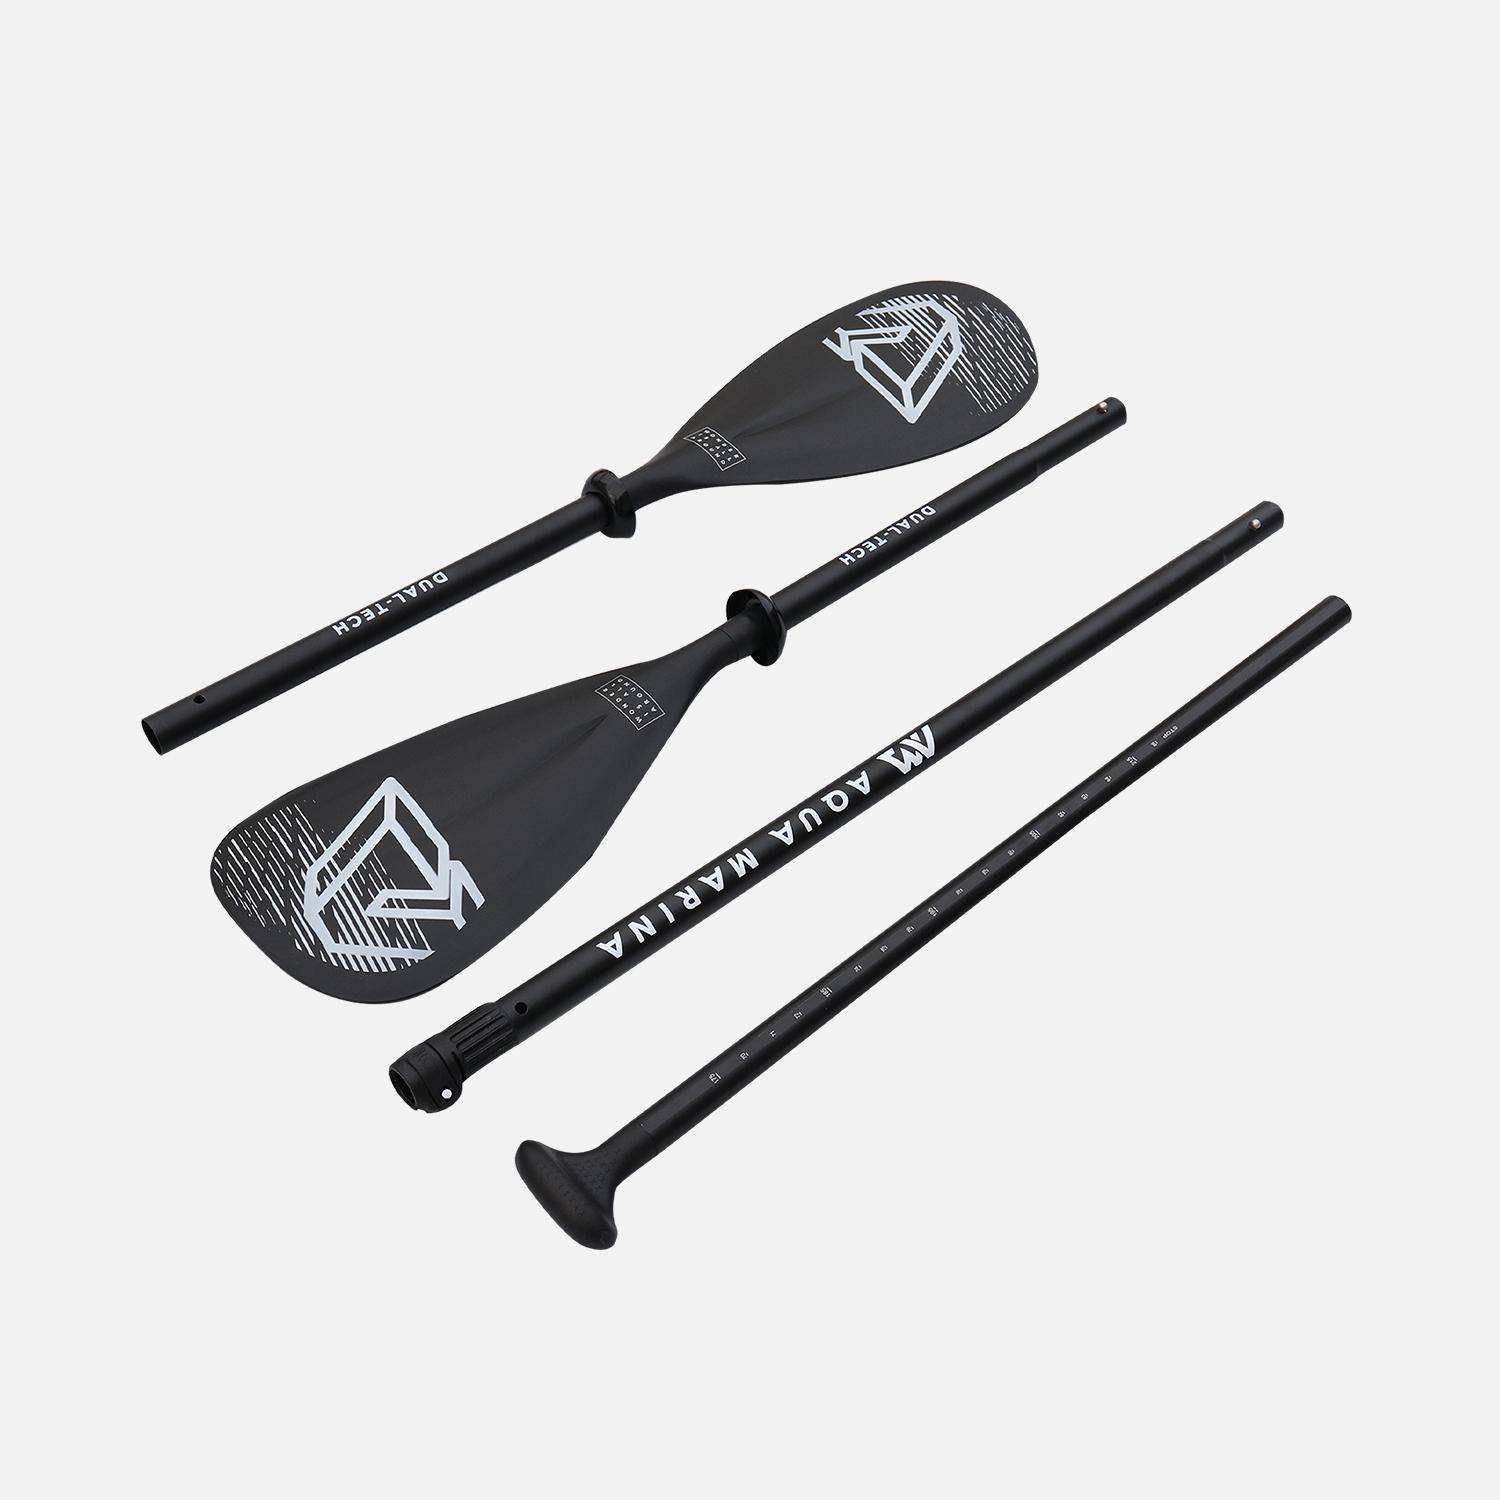 Pagaie 2 en 1 aluminium, démontable et réglable, pour stand up paddle (SUP) et kayak, rame Photo2